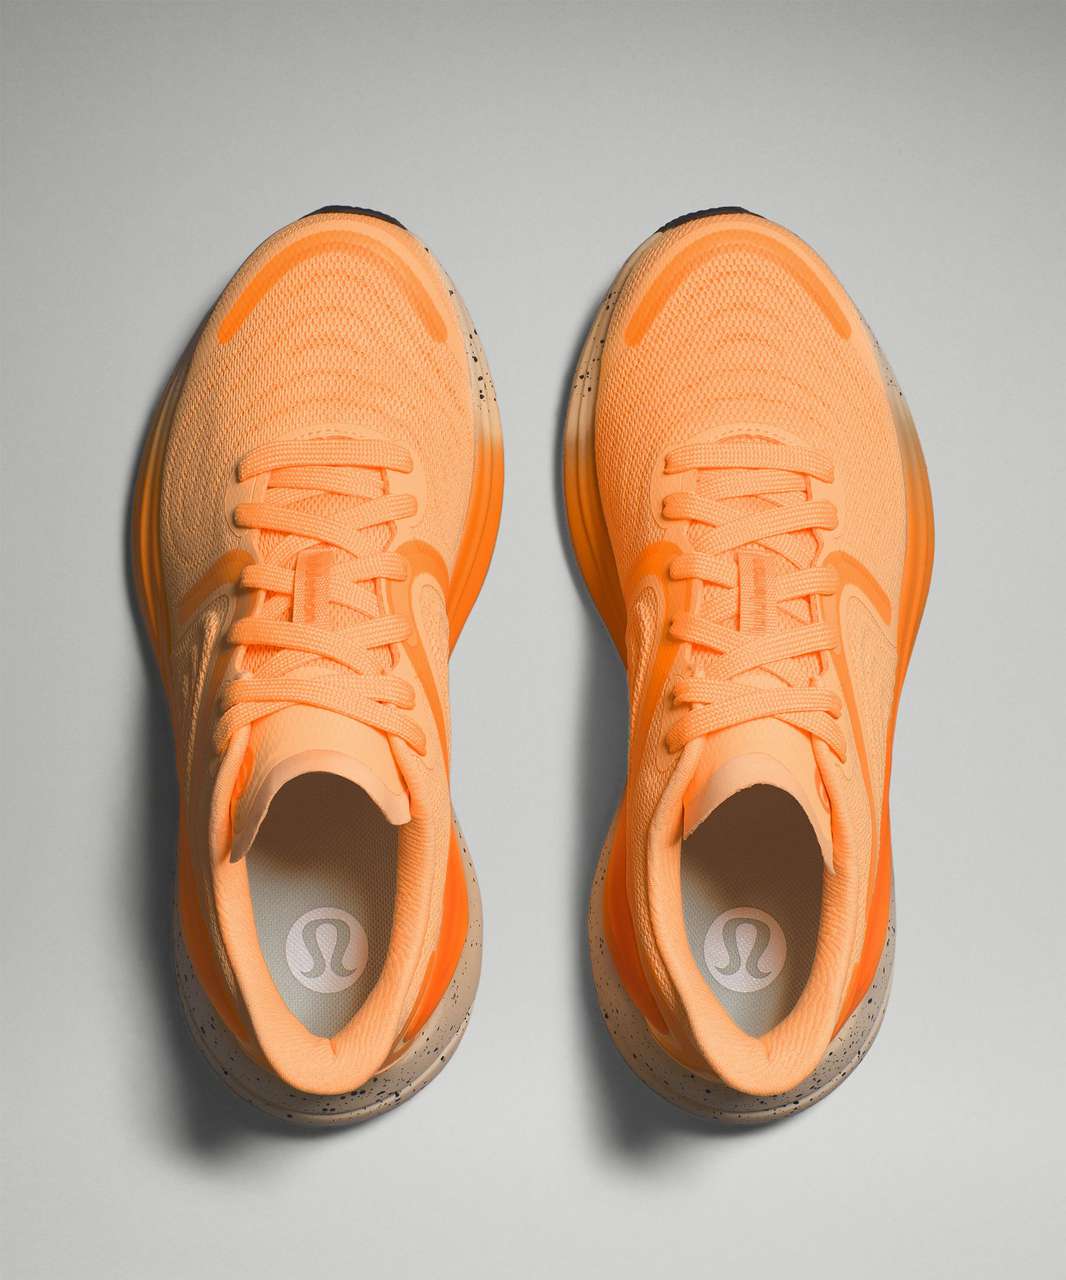 Lululemon Blissfeel 2 Womens Running Shoe - Florid Orange / Highlight Orange / Misty Shell